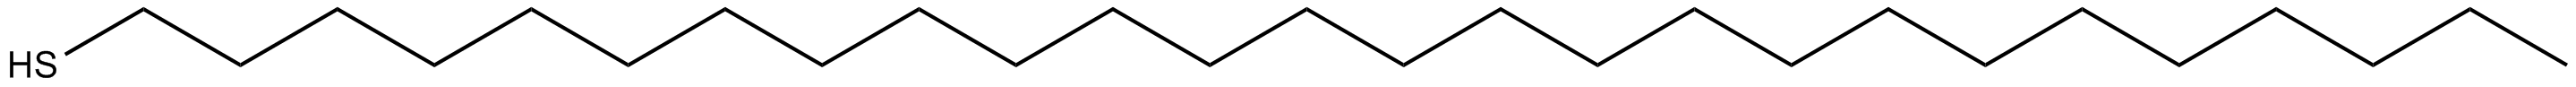 Image of 1-hexacosanethiol